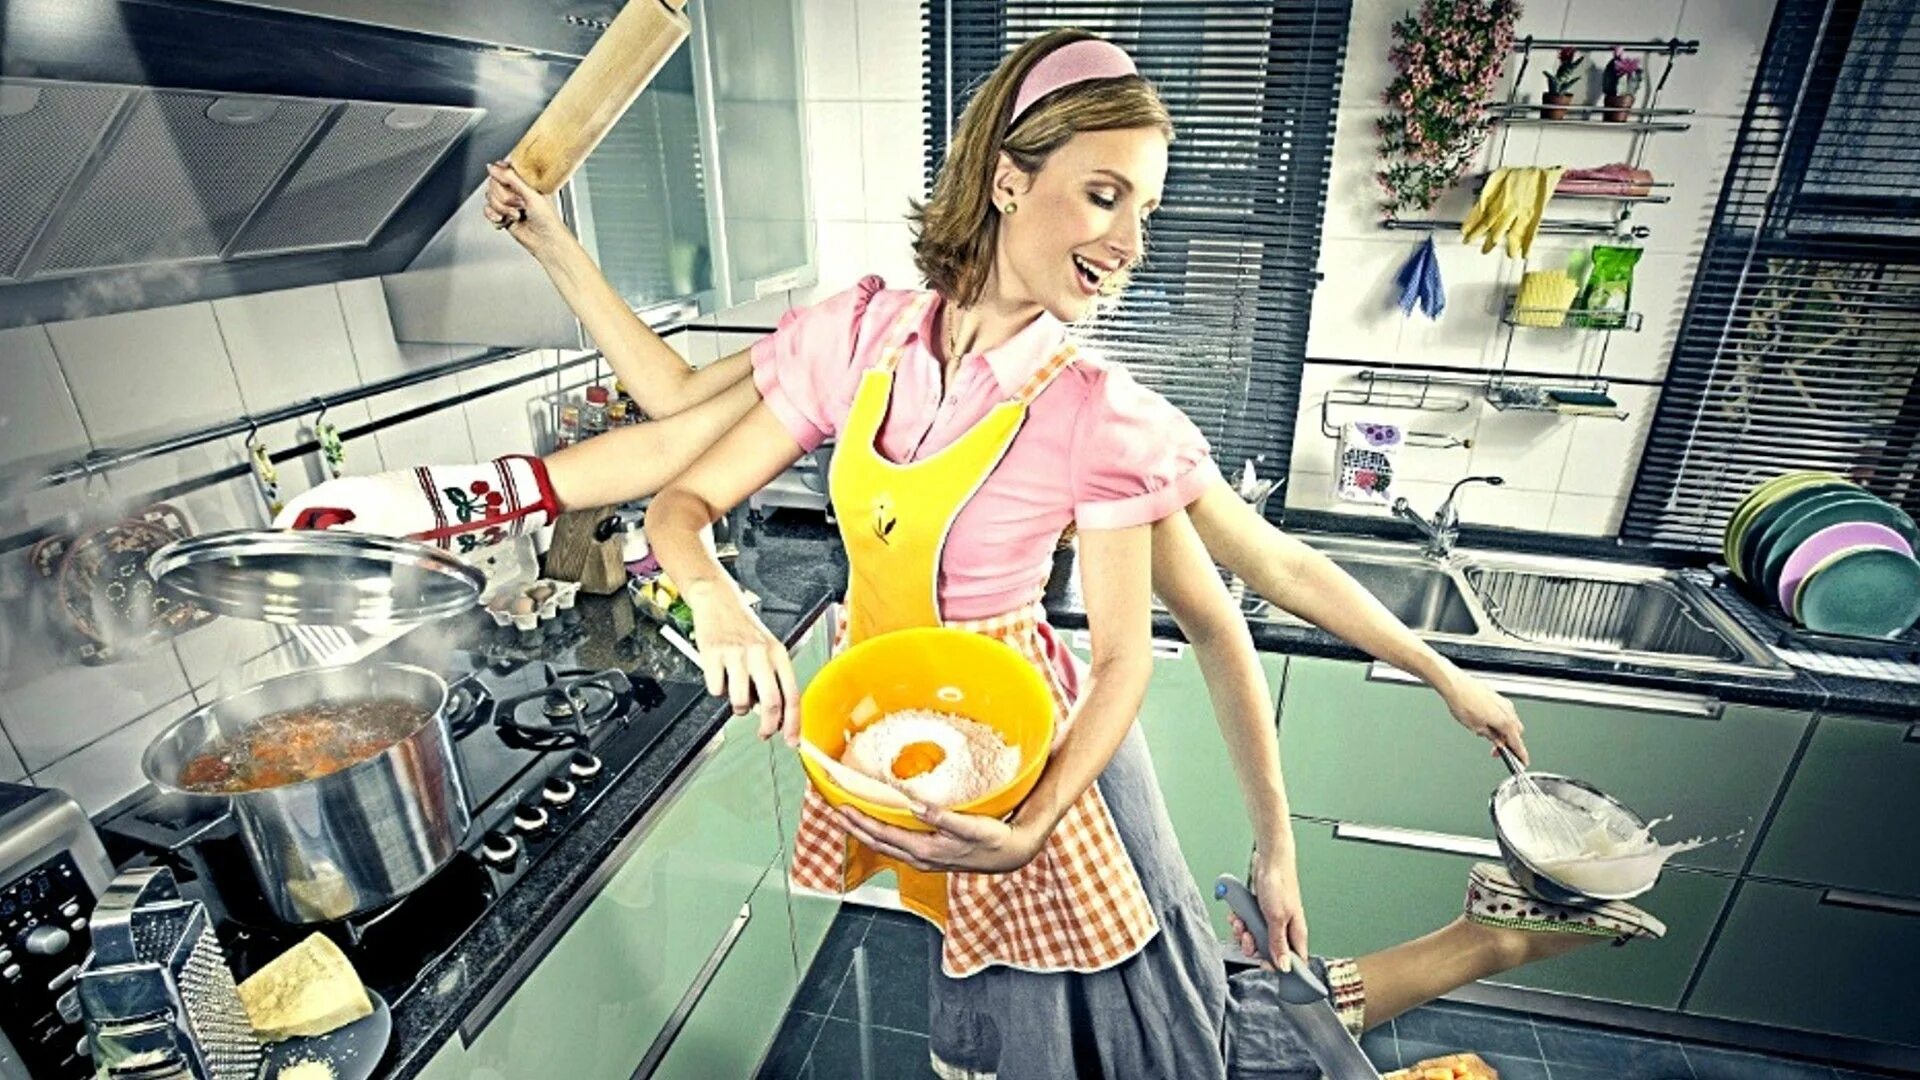 Я хозяйка этой жизни 137. Женщина домохозяйка. Кухня. Домохозяйка со стажем. Примерная жена.